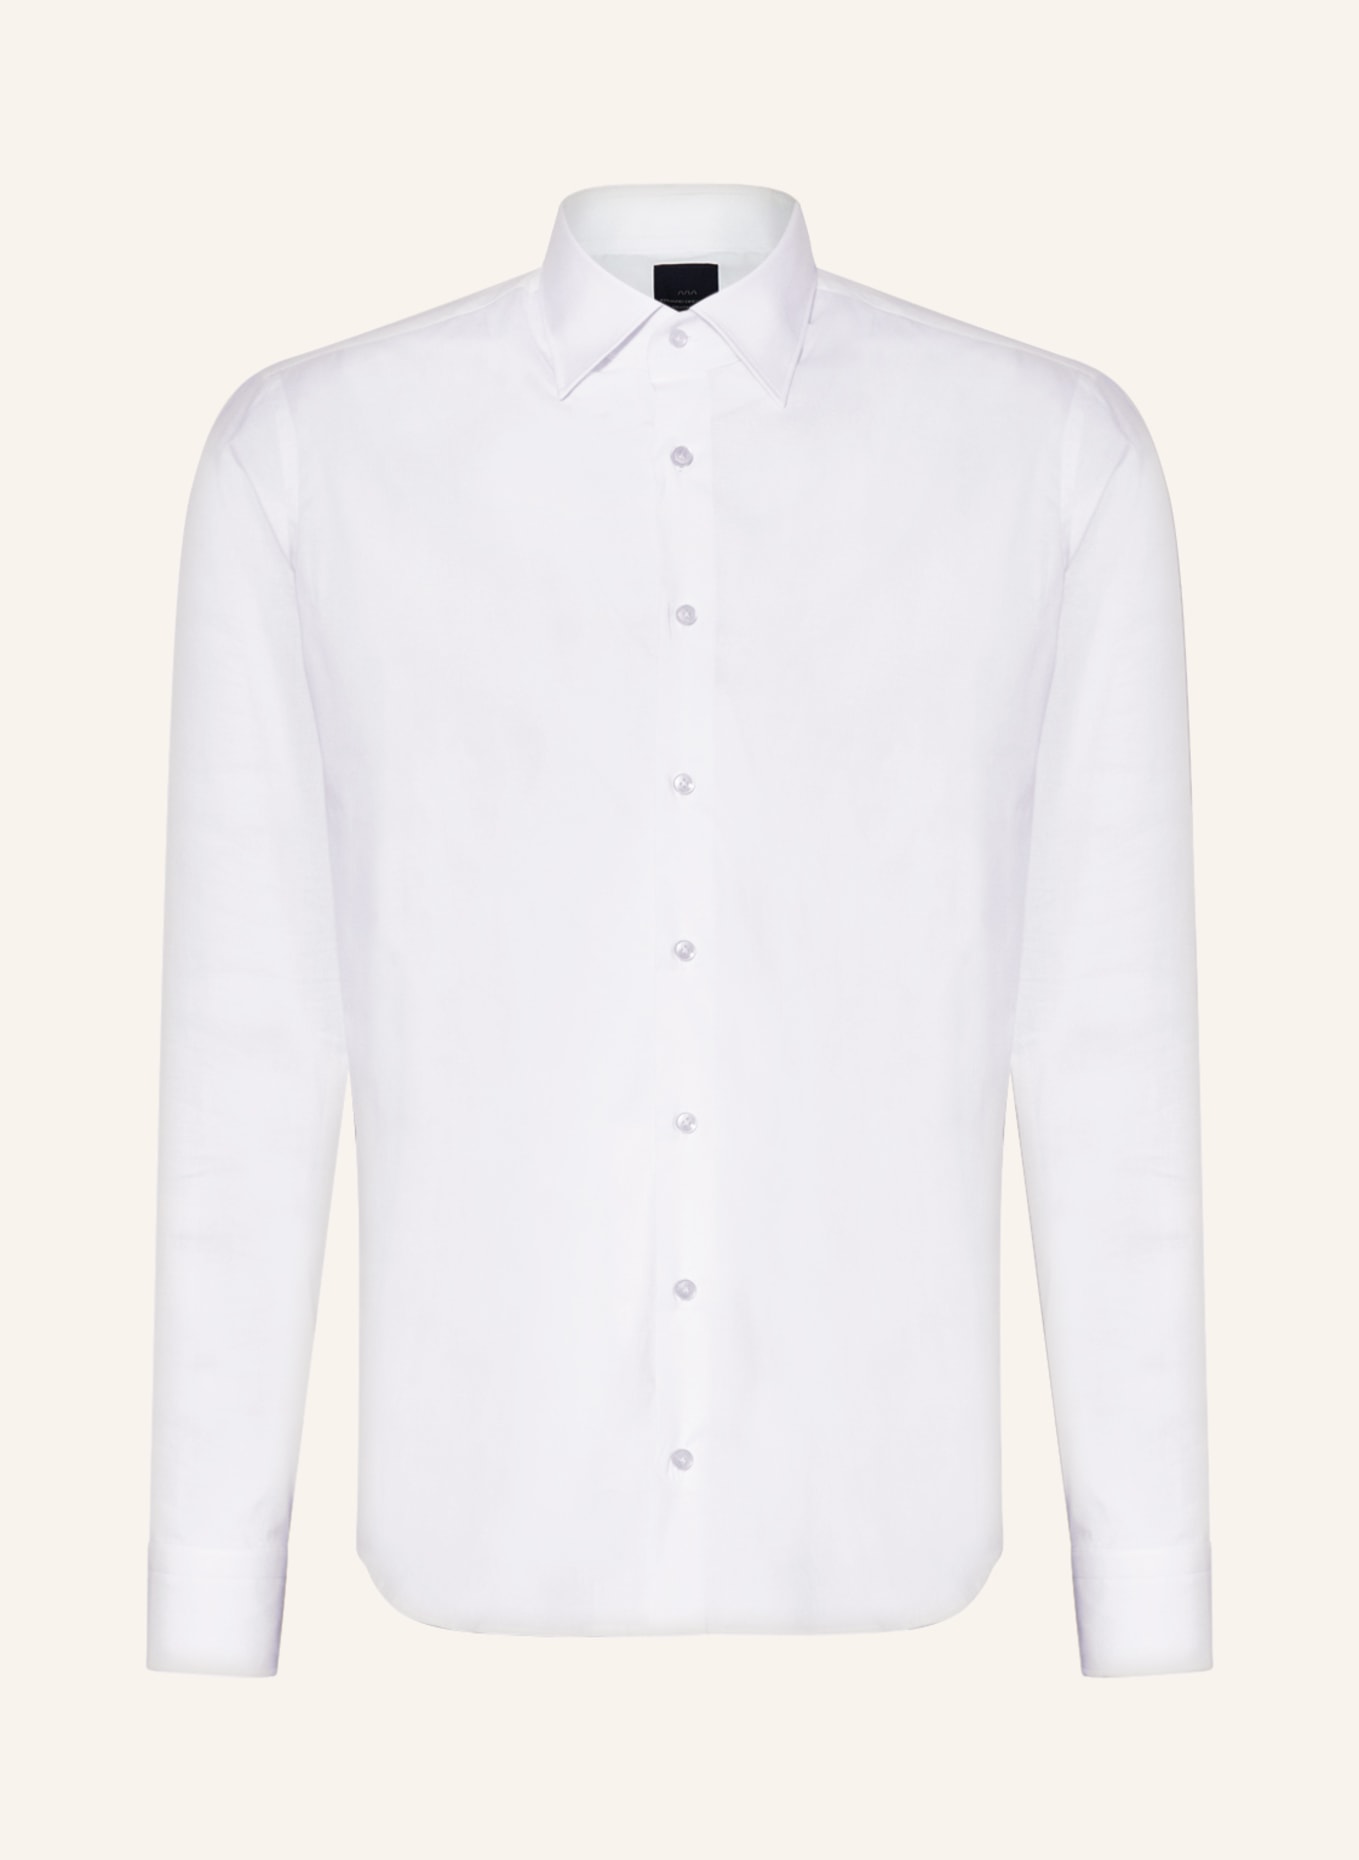 EDUARD DRESSLER Shirt shaped fit, Color: WHITE (Image 1)